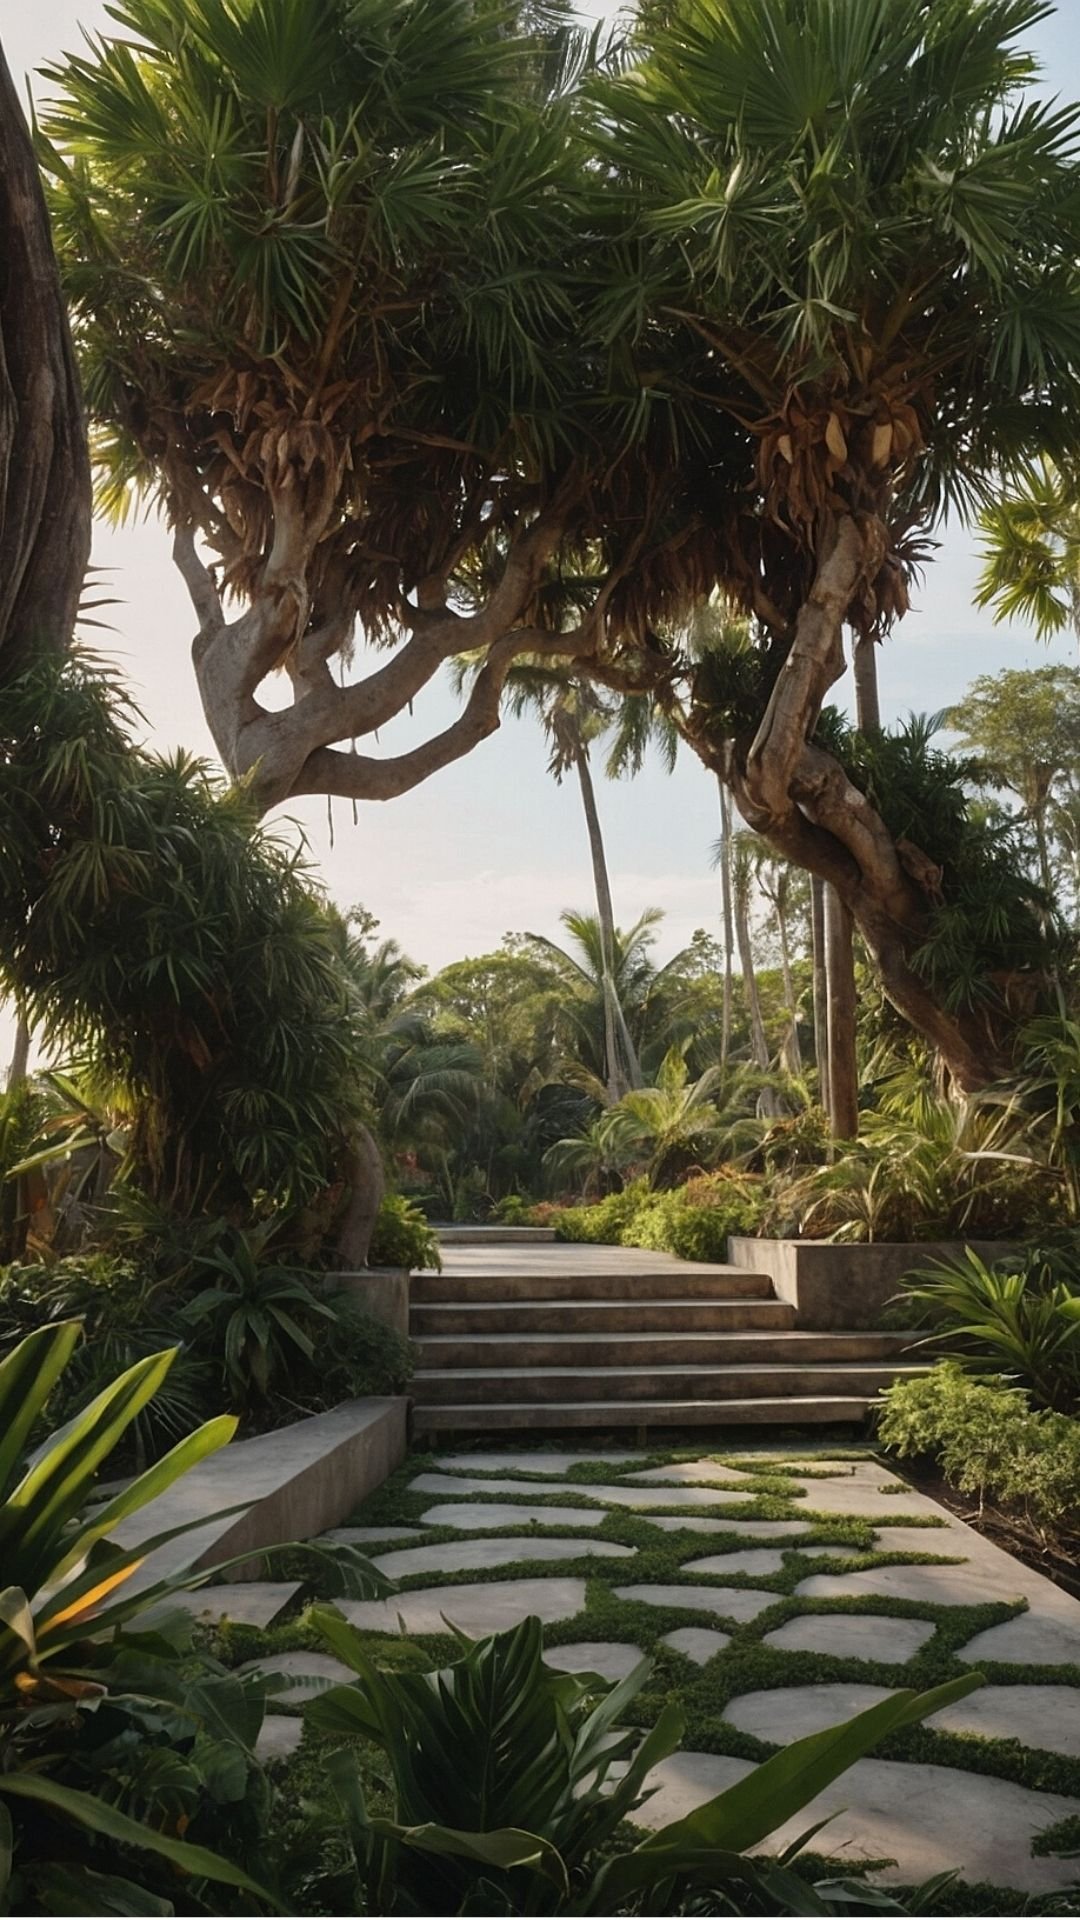 Majestic Palms Gateway: Step into Tropical Splendor